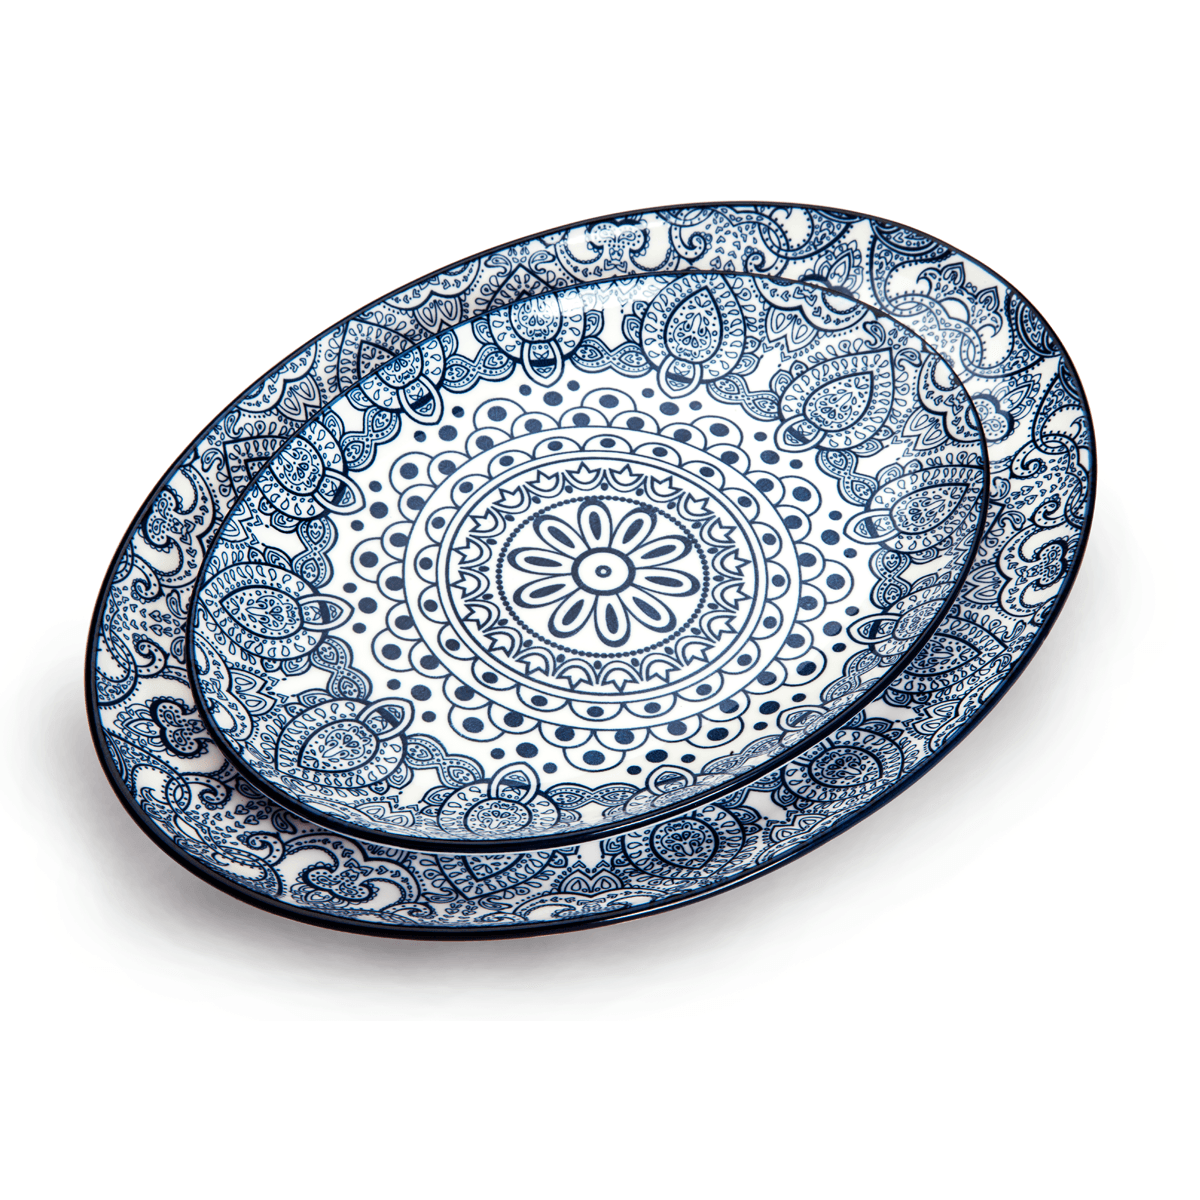 صحن تقديم بيضوي بورسلان 20 سم أزرق شي بروشي Che Brucia Arabesque Oval Plate